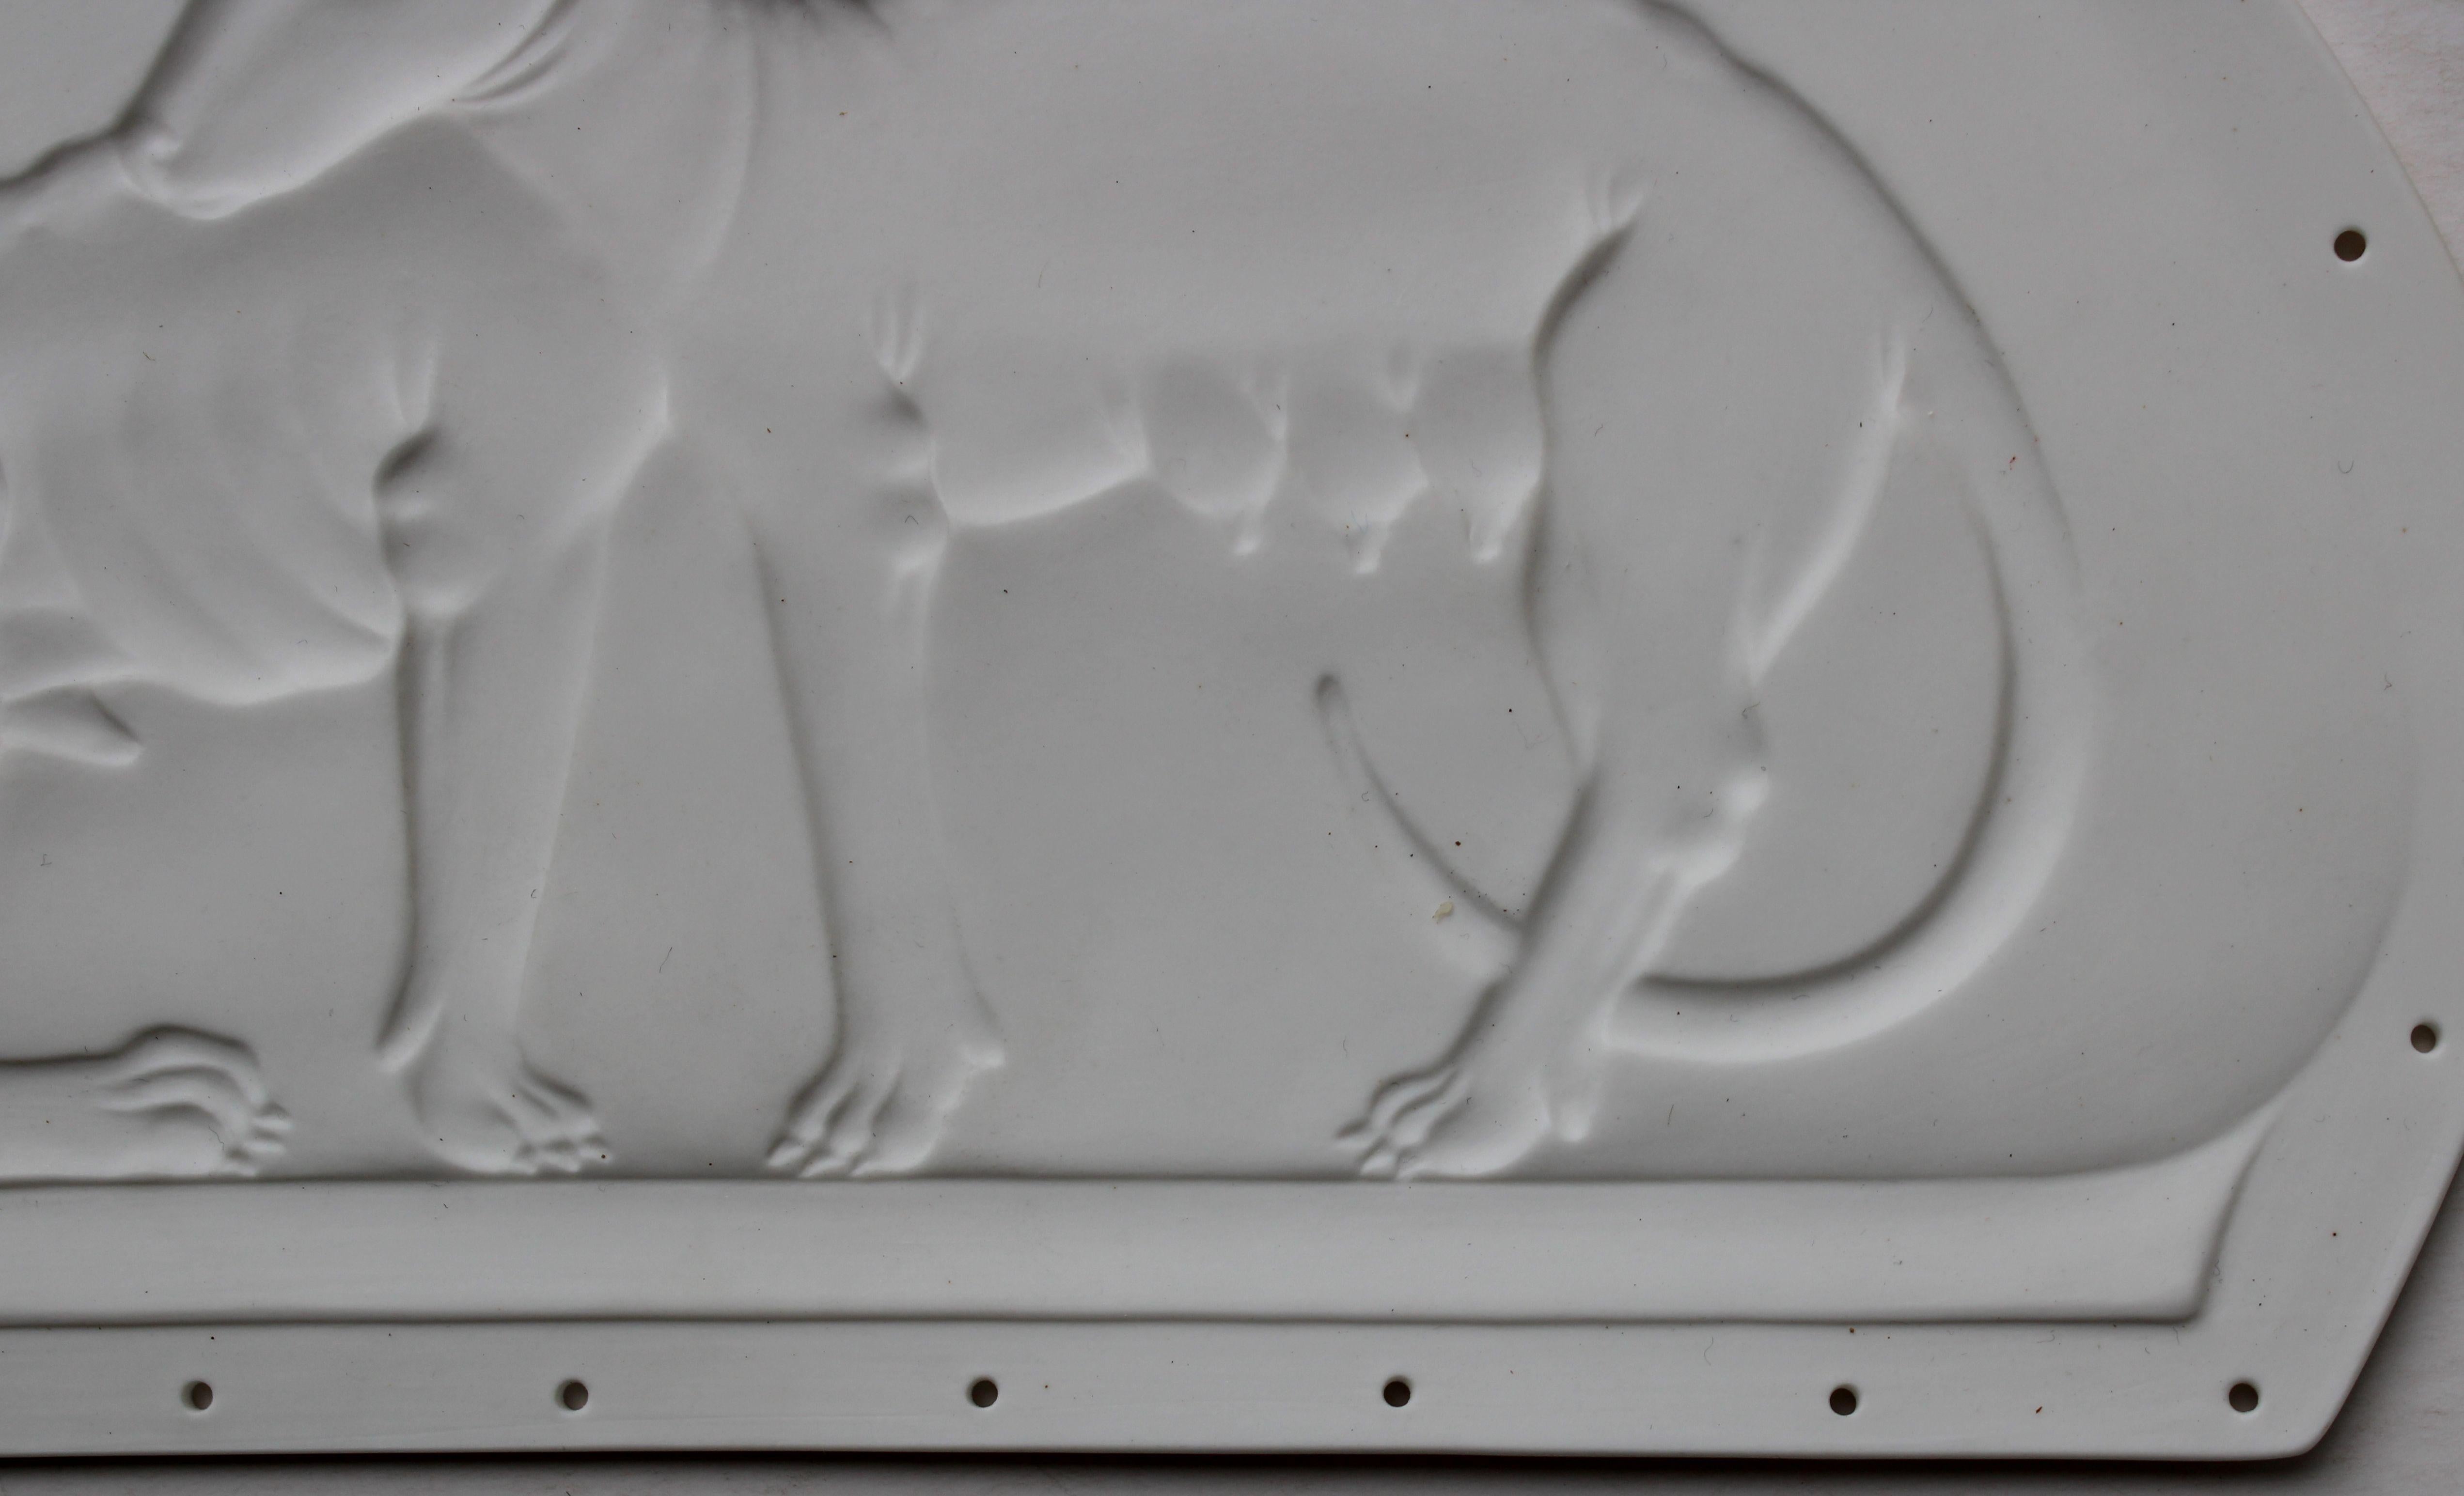 Rome wolfs - negative relief  Lithophane, bone porcelain, h 13.7 cm - Contemporary Sculpture by Ilona Romule